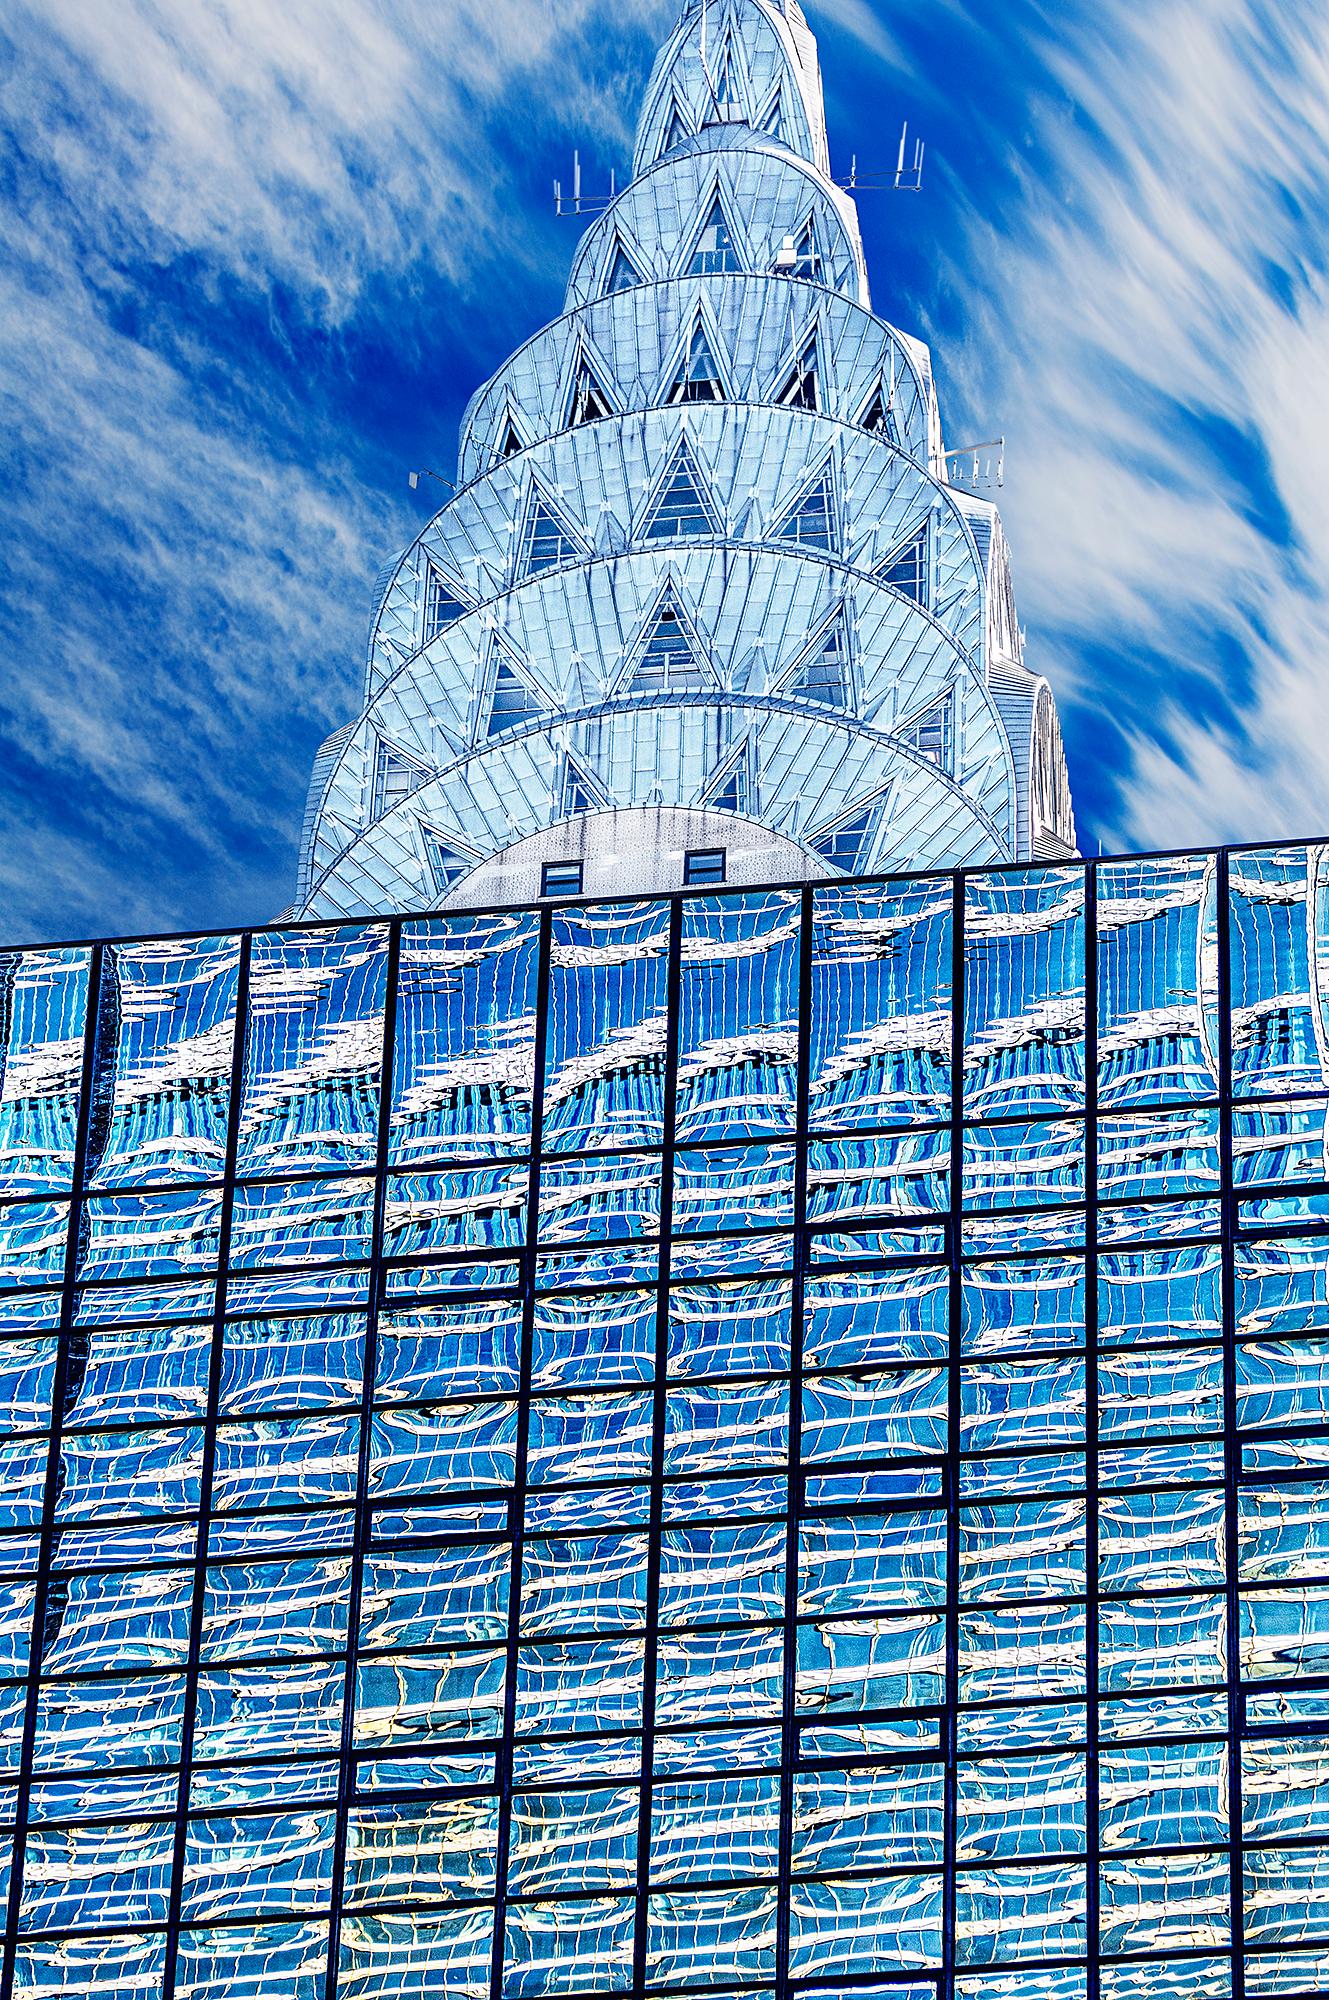 Mitchell Funk Abstract Photograph – Chrysler-Gebäudeplatte  Art déco-Architektur in Blau und Silber